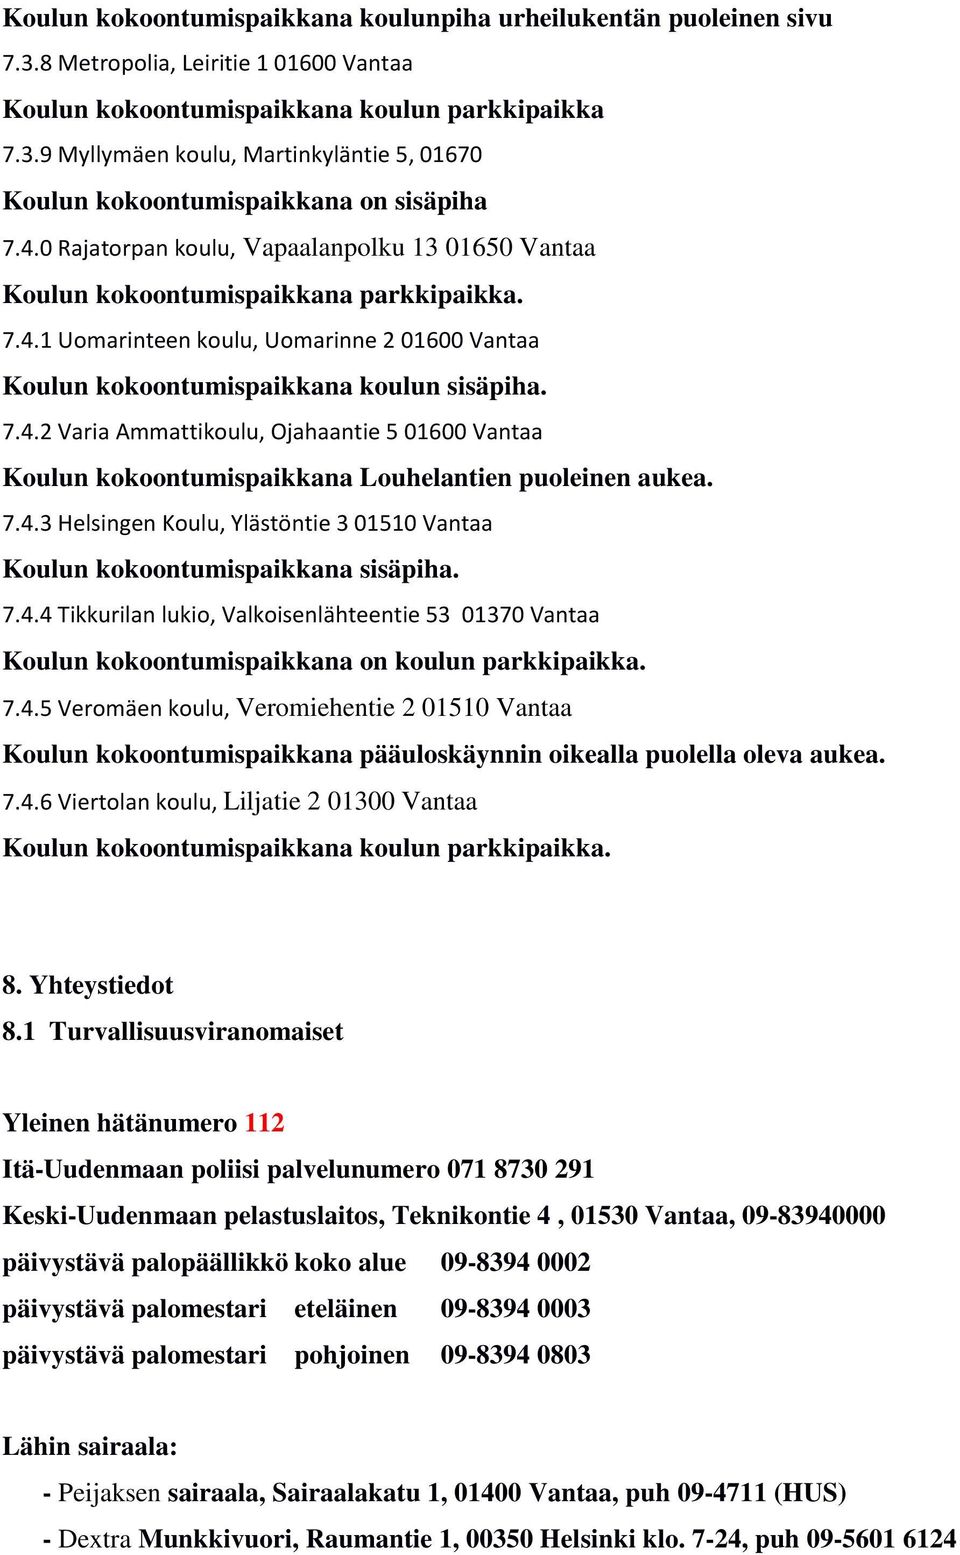 7.4.3 Helsingen Koulu, Ylästöntie 3 01510 Vantaa Koulun kokoontumispaikkana sisäpiha. 7.4.4 Tikkurilan lukio, Valkoisenlähteentie 53 01370 Vantaa Koulun kokoontumispaikkana on koulun parkkipaikka. 7.4.5 Veromäen koulu, Veromiehentie 2 01510 Vantaa Koulun kokoontumispaikkana pääuloskäynnin oikealla puolella oleva aukea.